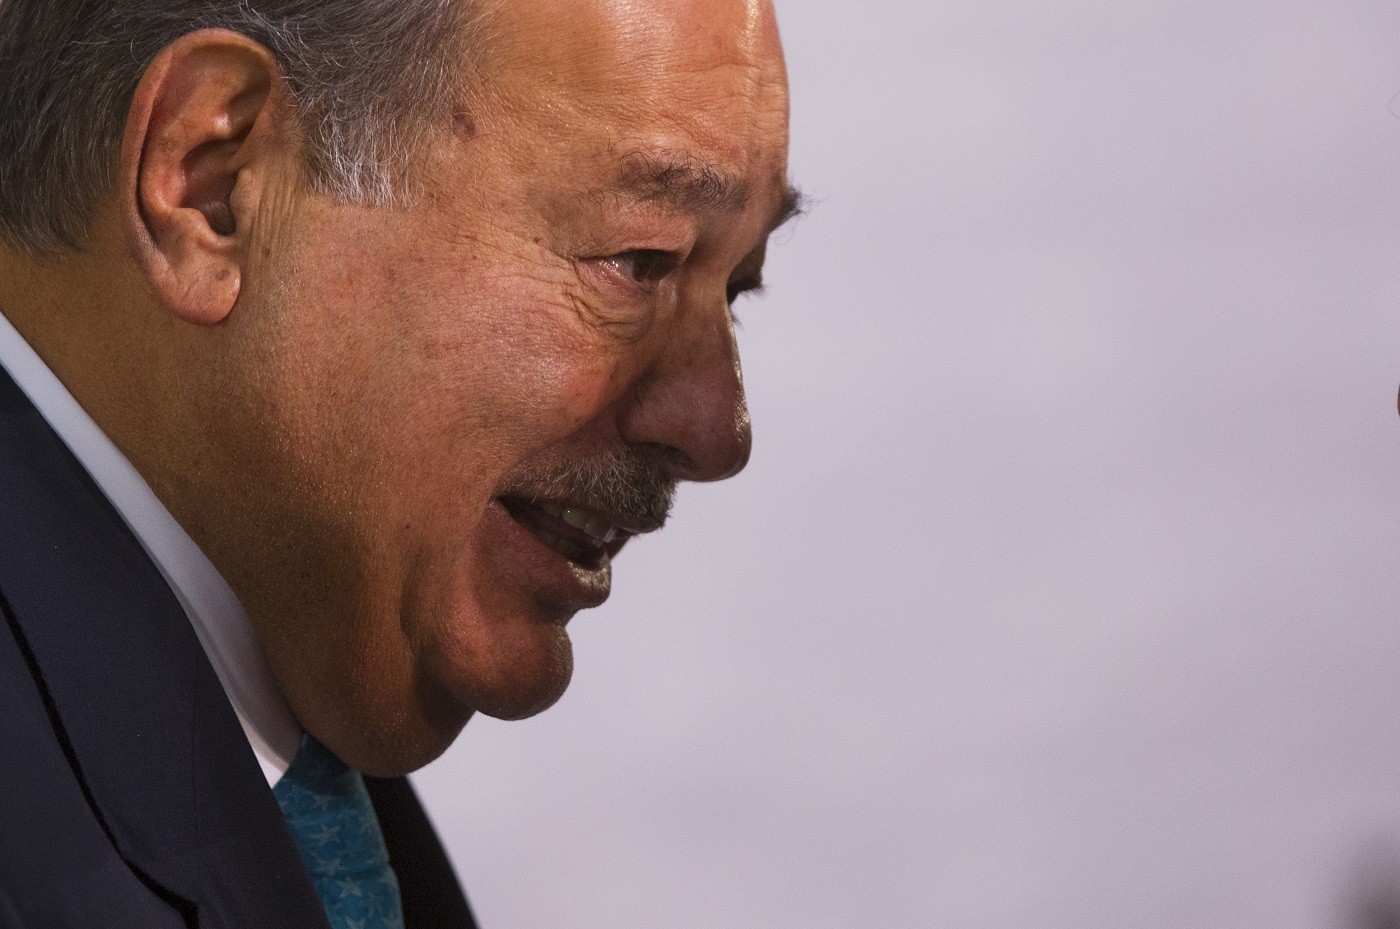 Carlos Slim (Foto: Hector Vivas/STR/Getty Images)